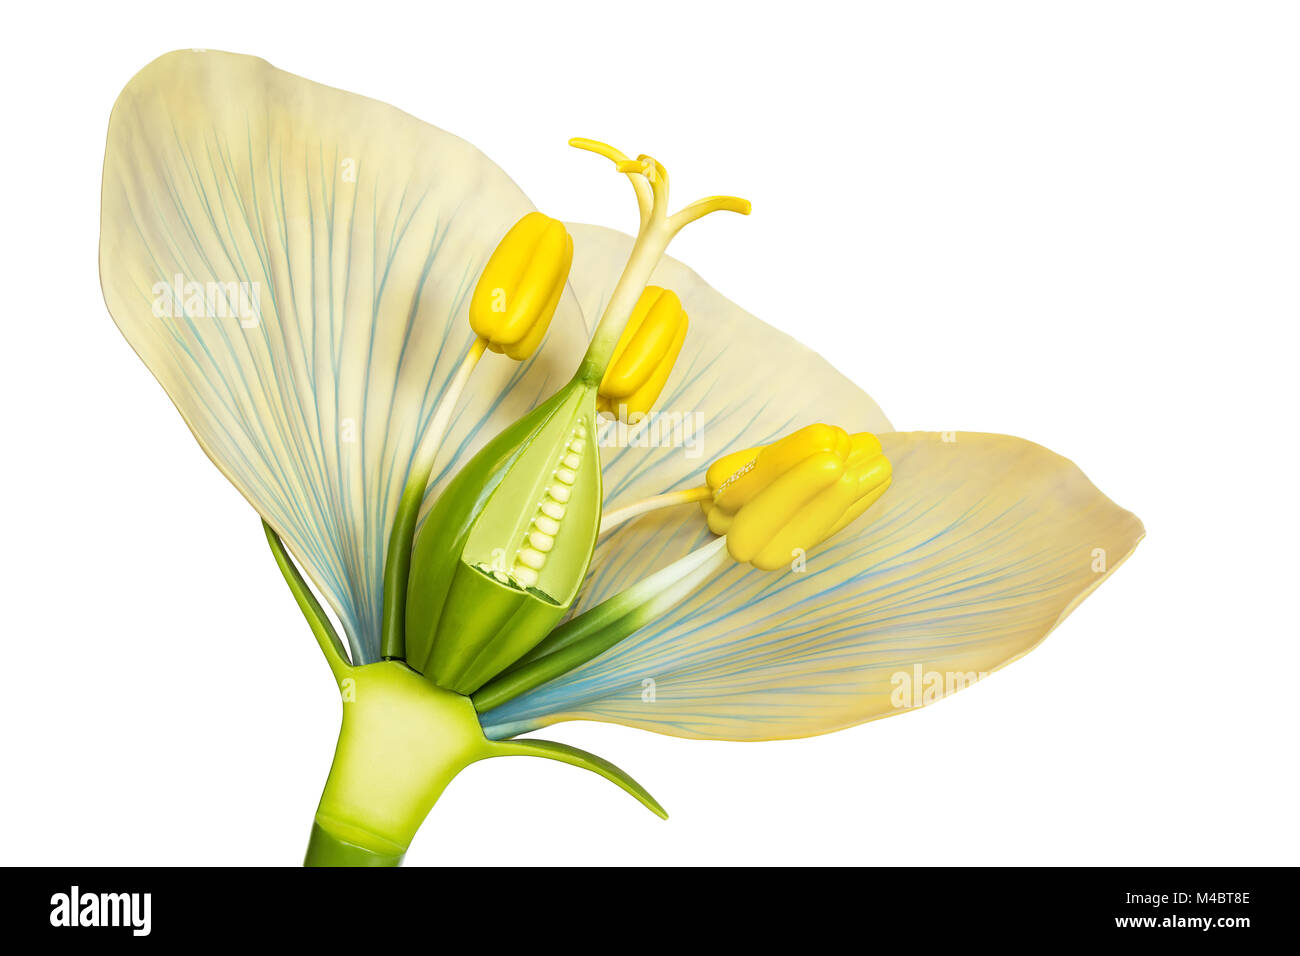 Modello di fiore con stami e pistilli su bianco Foto Stock